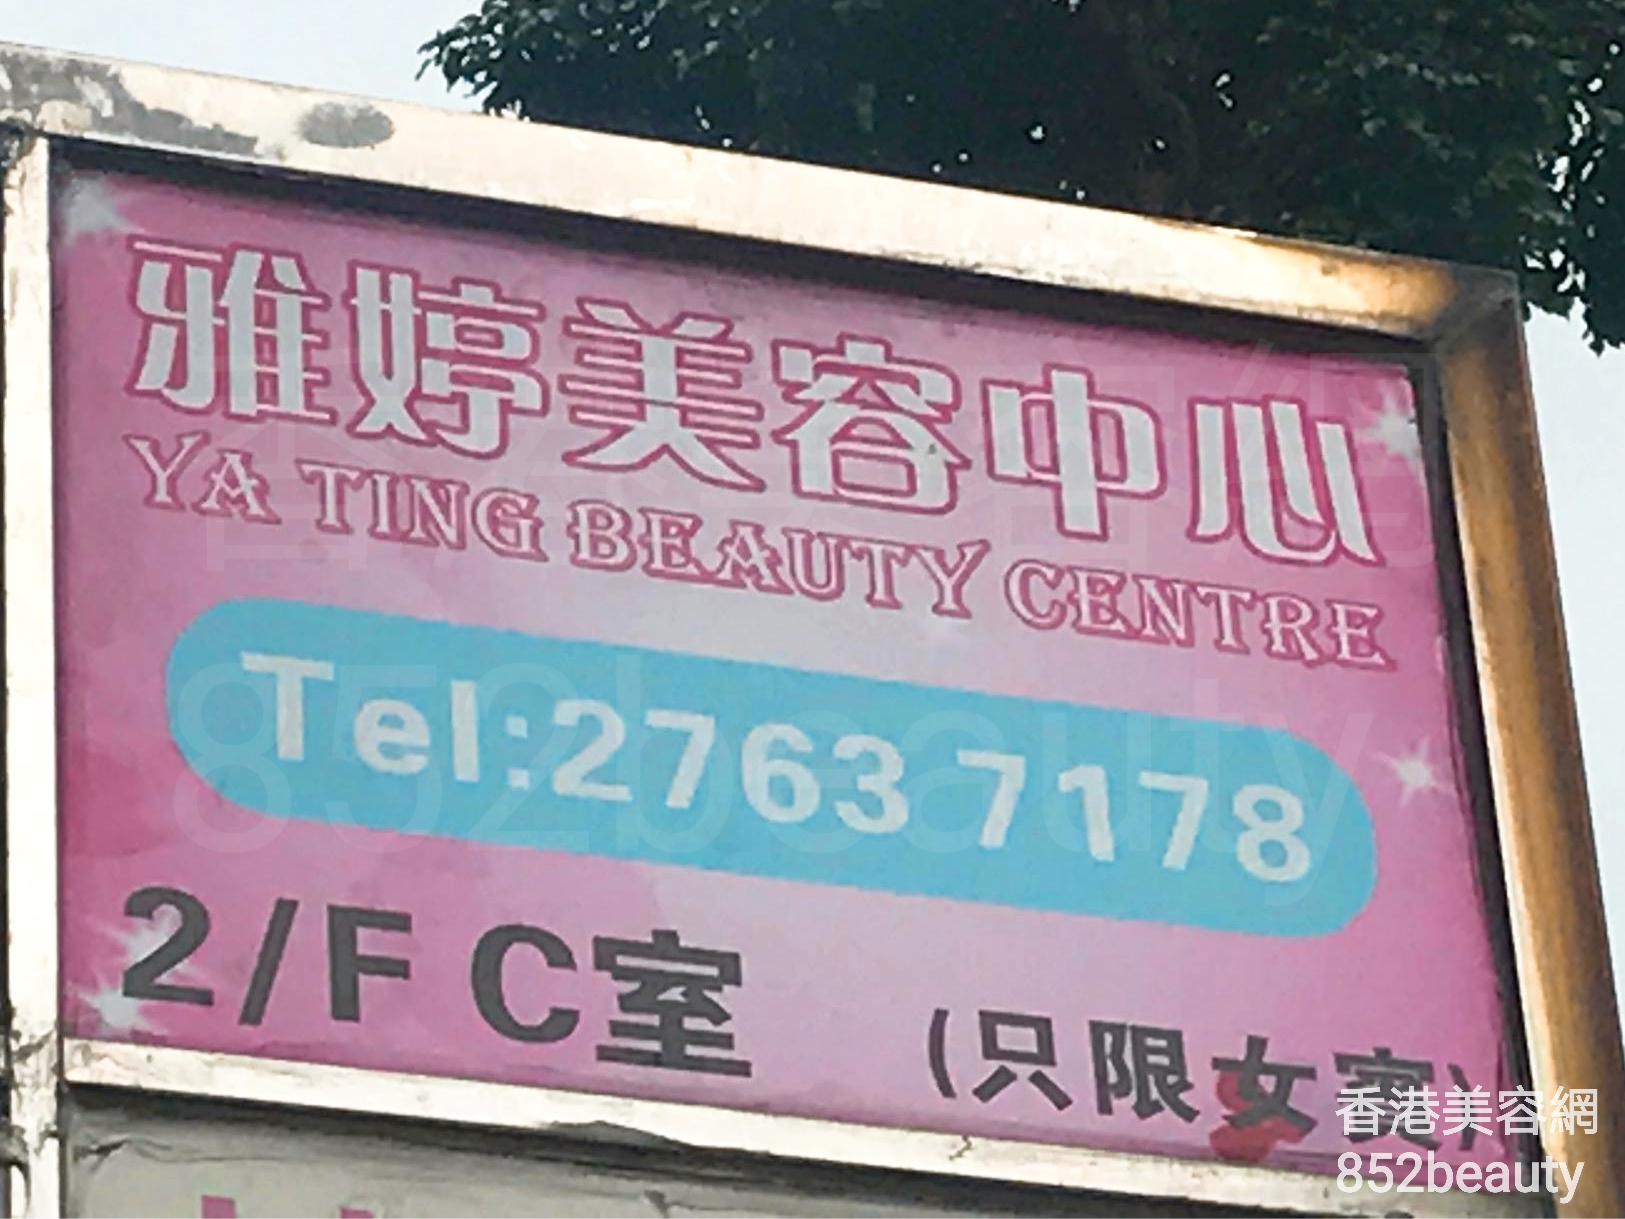 脱毛: 雅婷美容中心 Ya Ting Beauty Centre